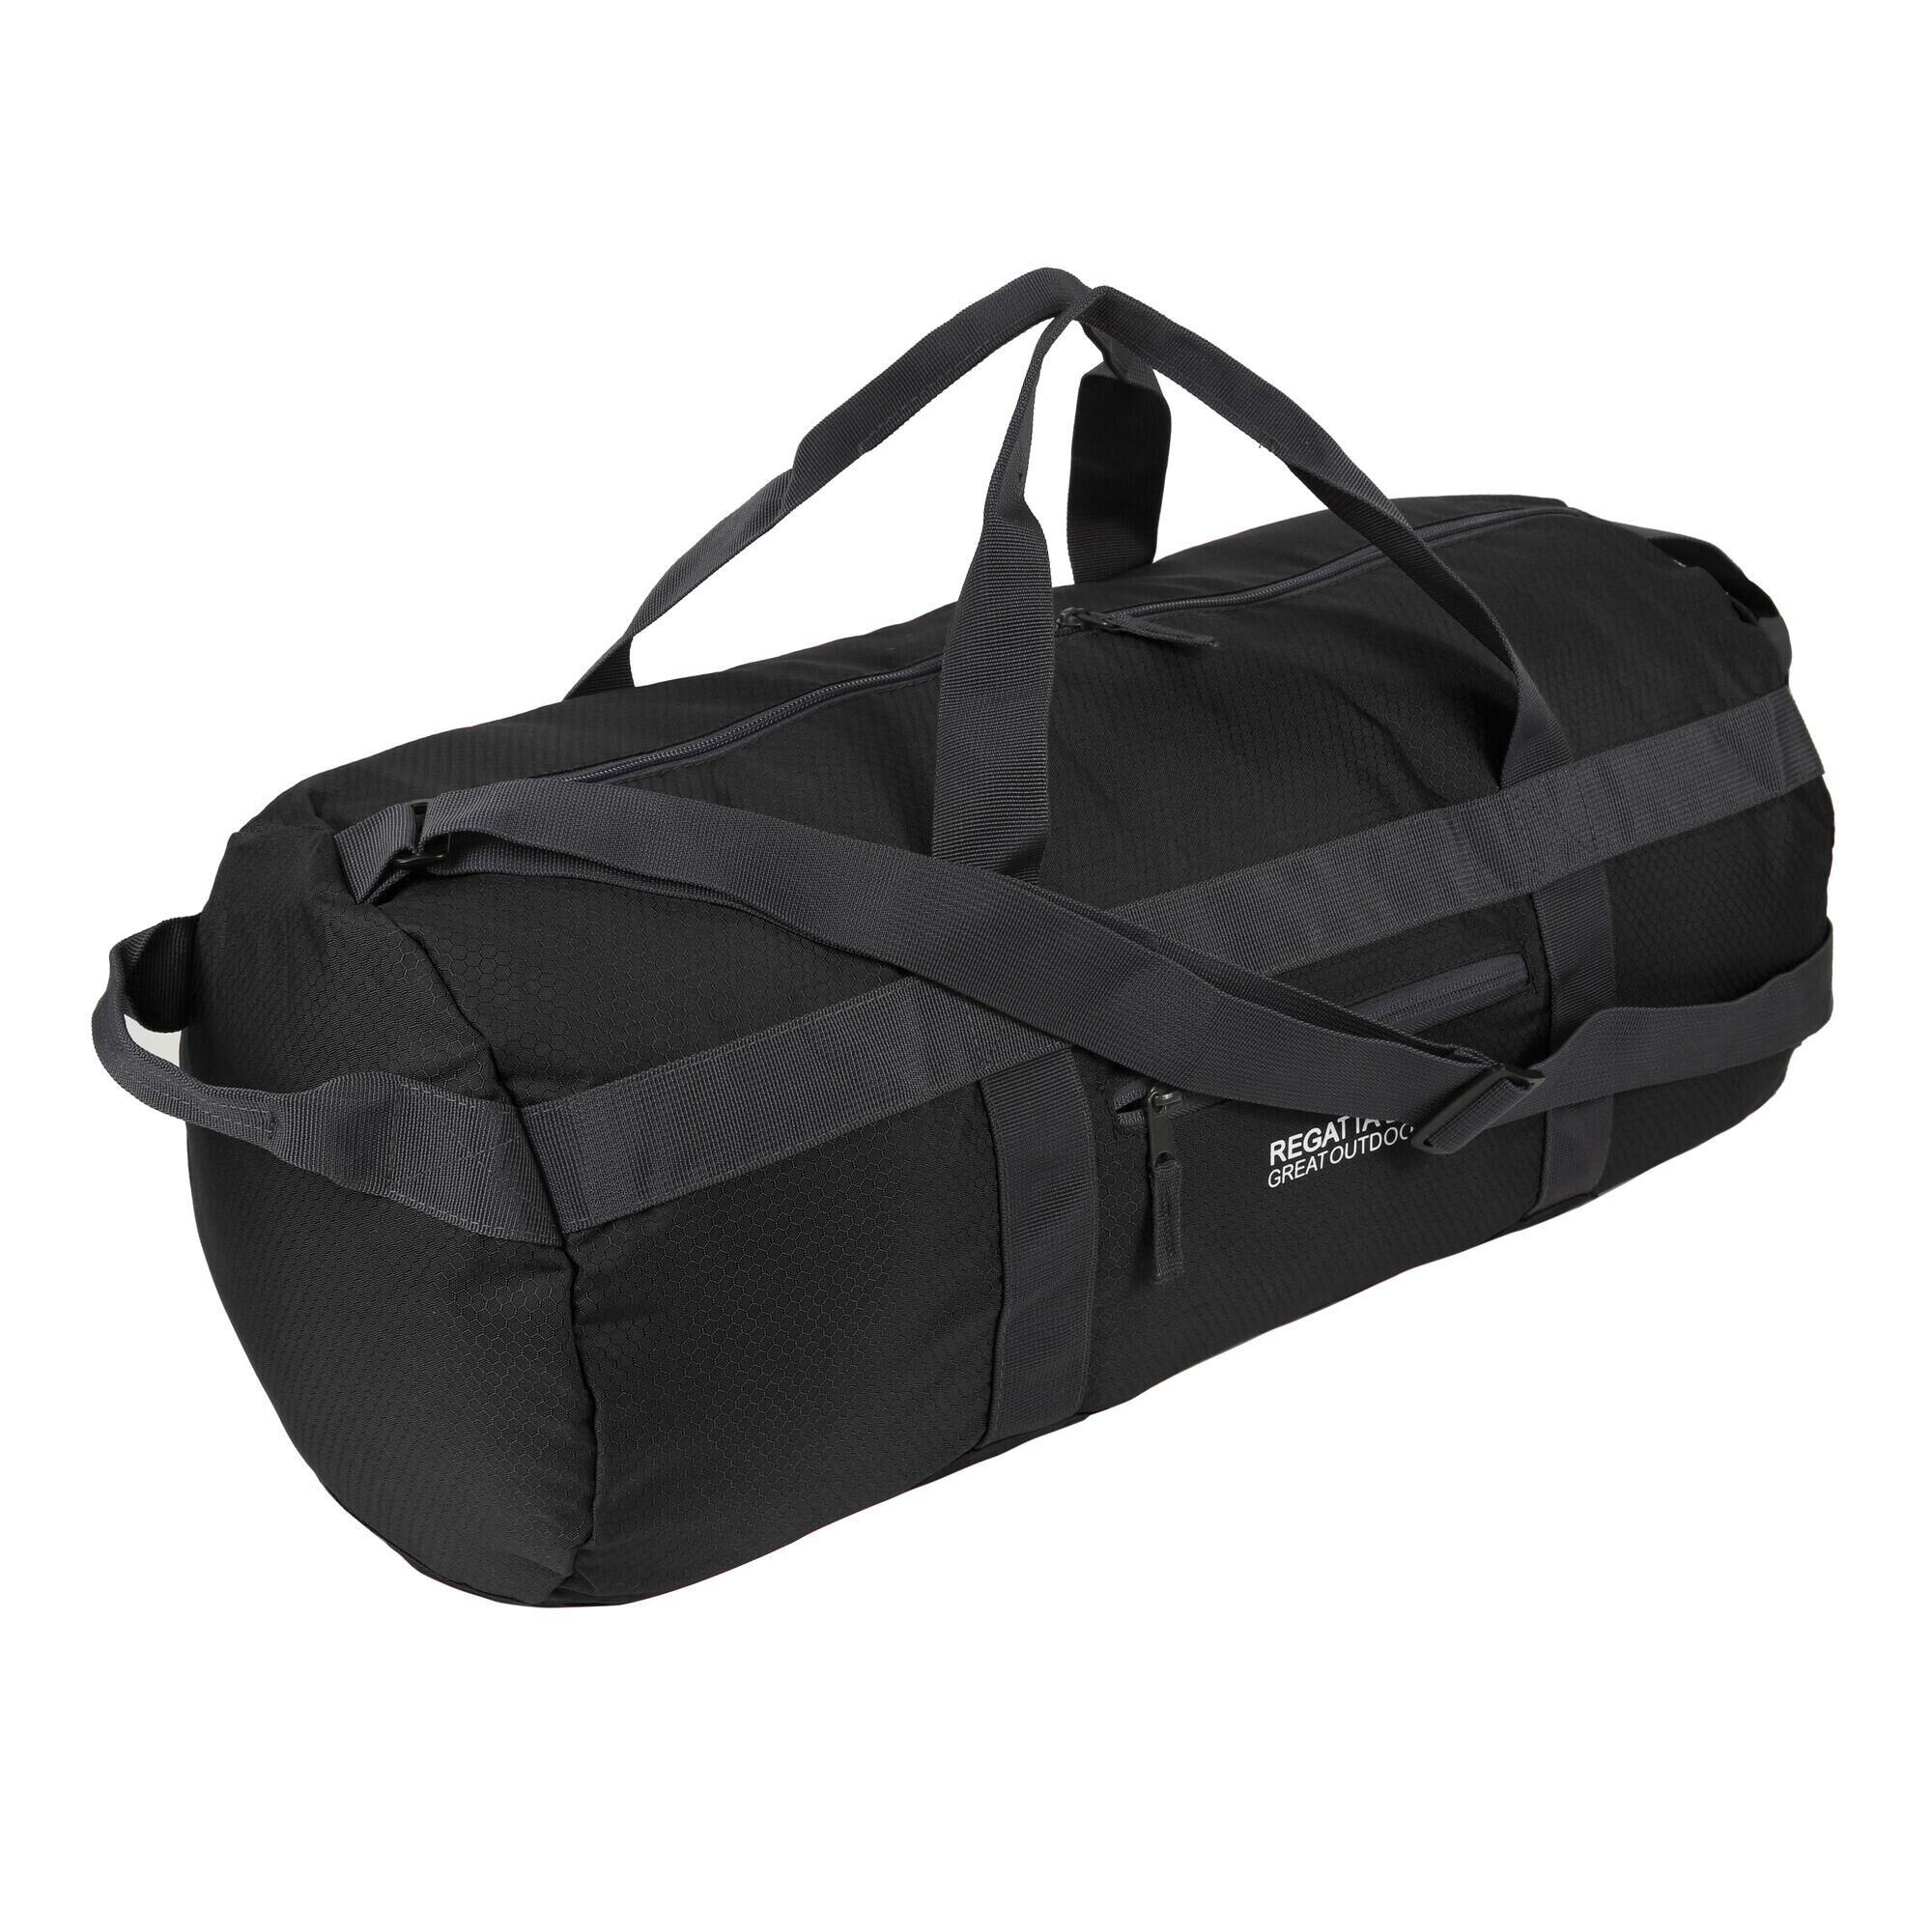 REGATTA Packaway 40L Adults' Unisex Fitness Duffle Bag - Black